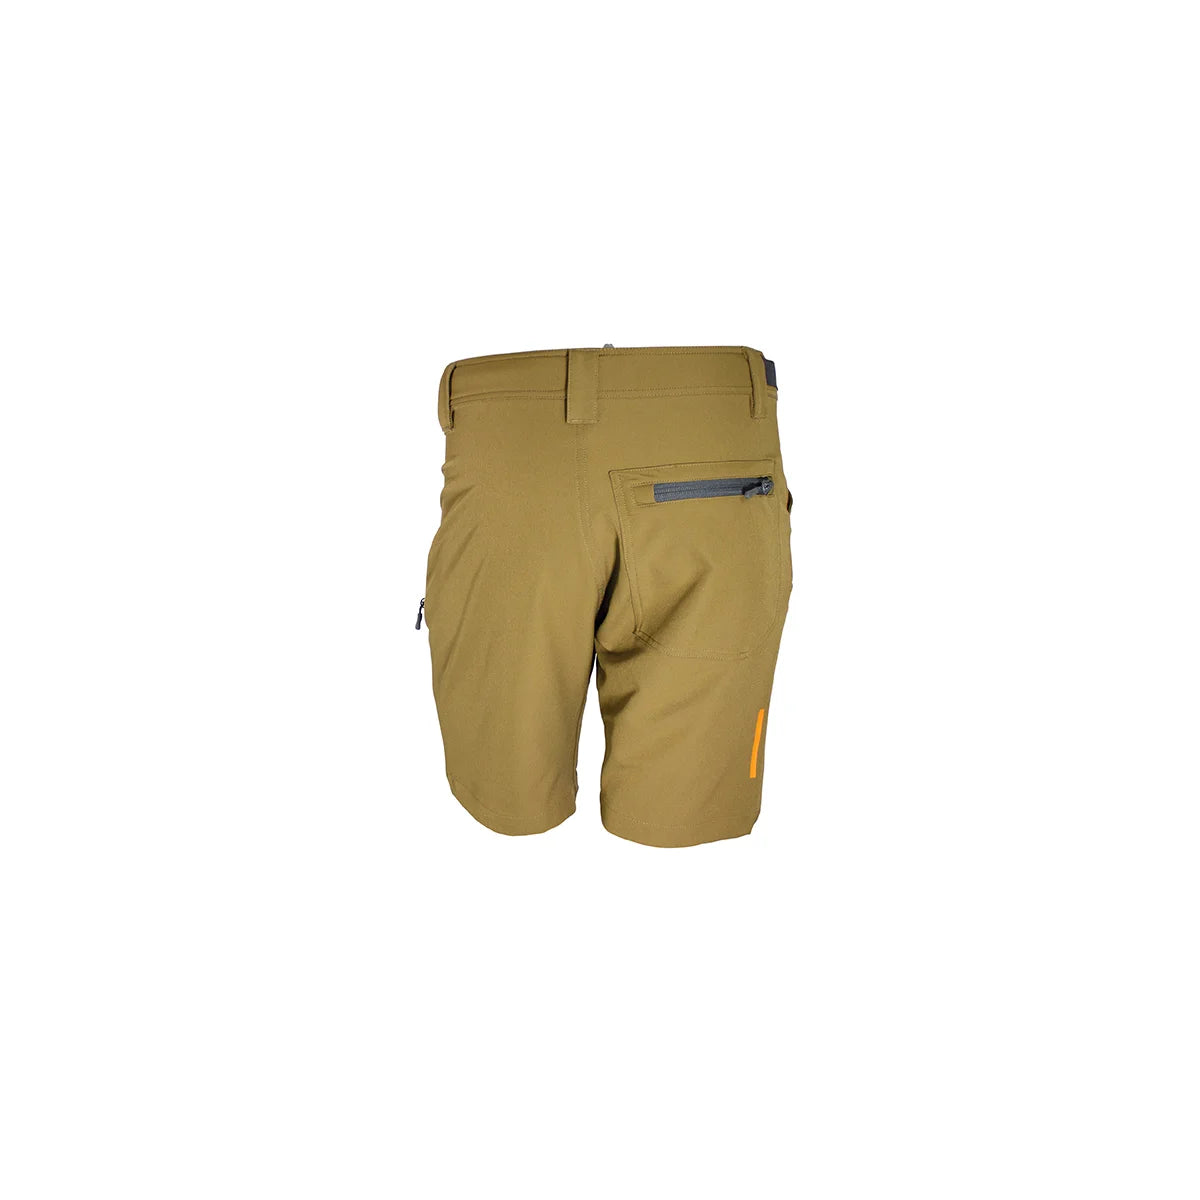 Spika - Mens - Xone Shorts - Brown